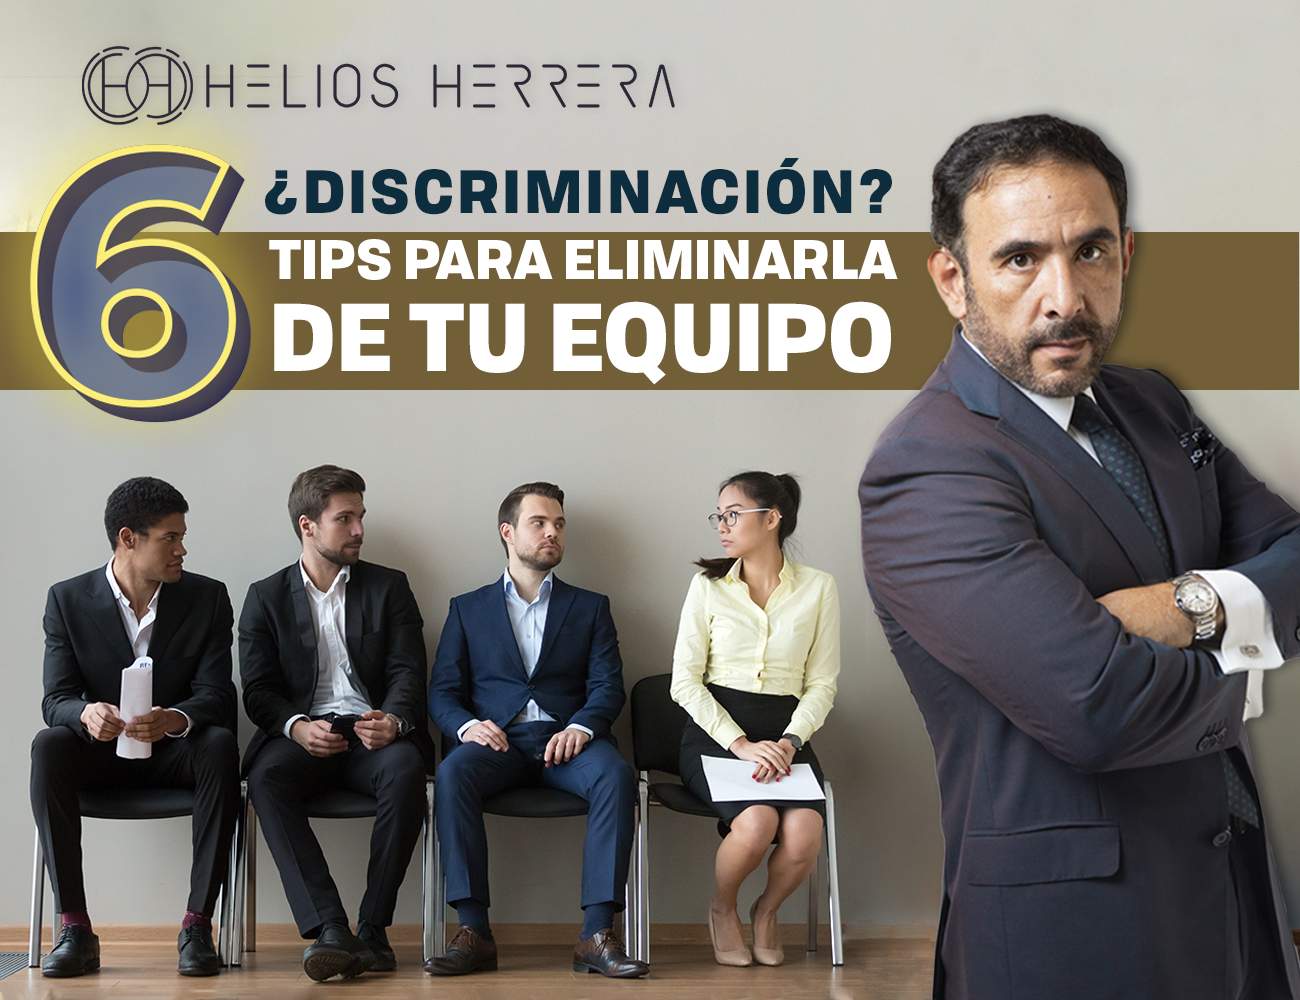 Discriminacion en el trabajo. 6 tips para promover la igualdad